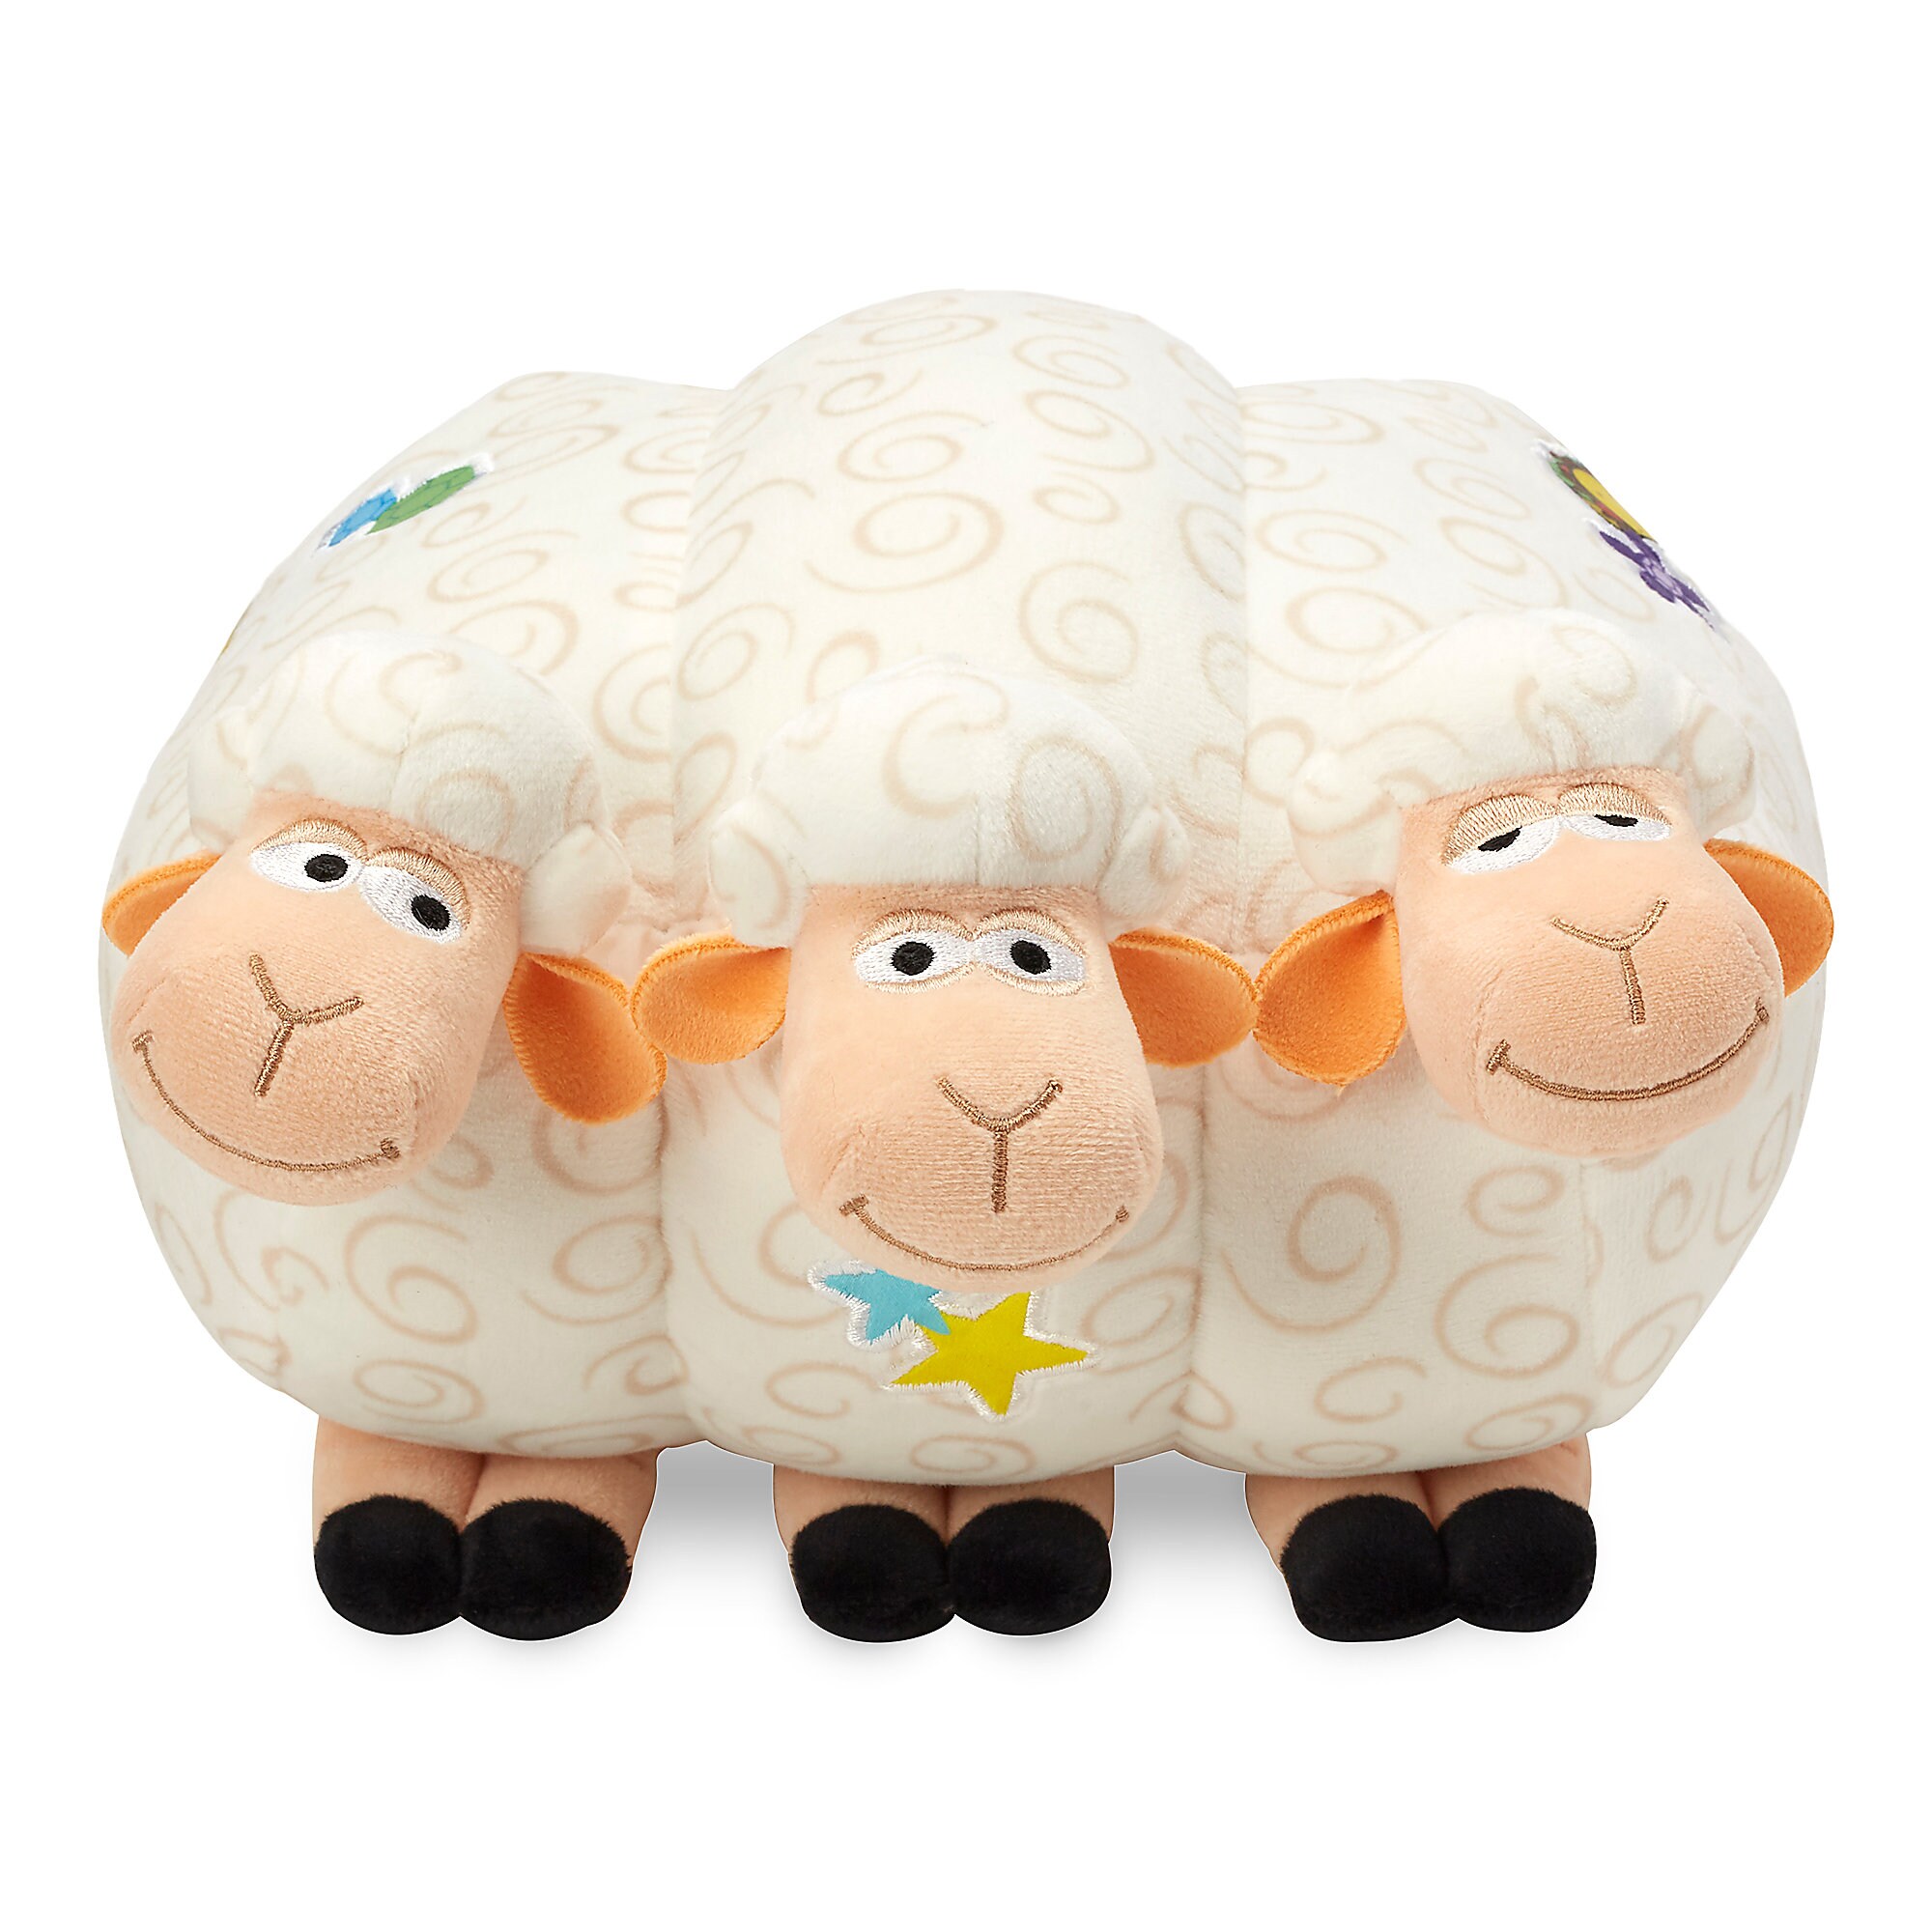 Billy, Goat, and Gruff Plush - Toy Story 4 - Medium - 10''